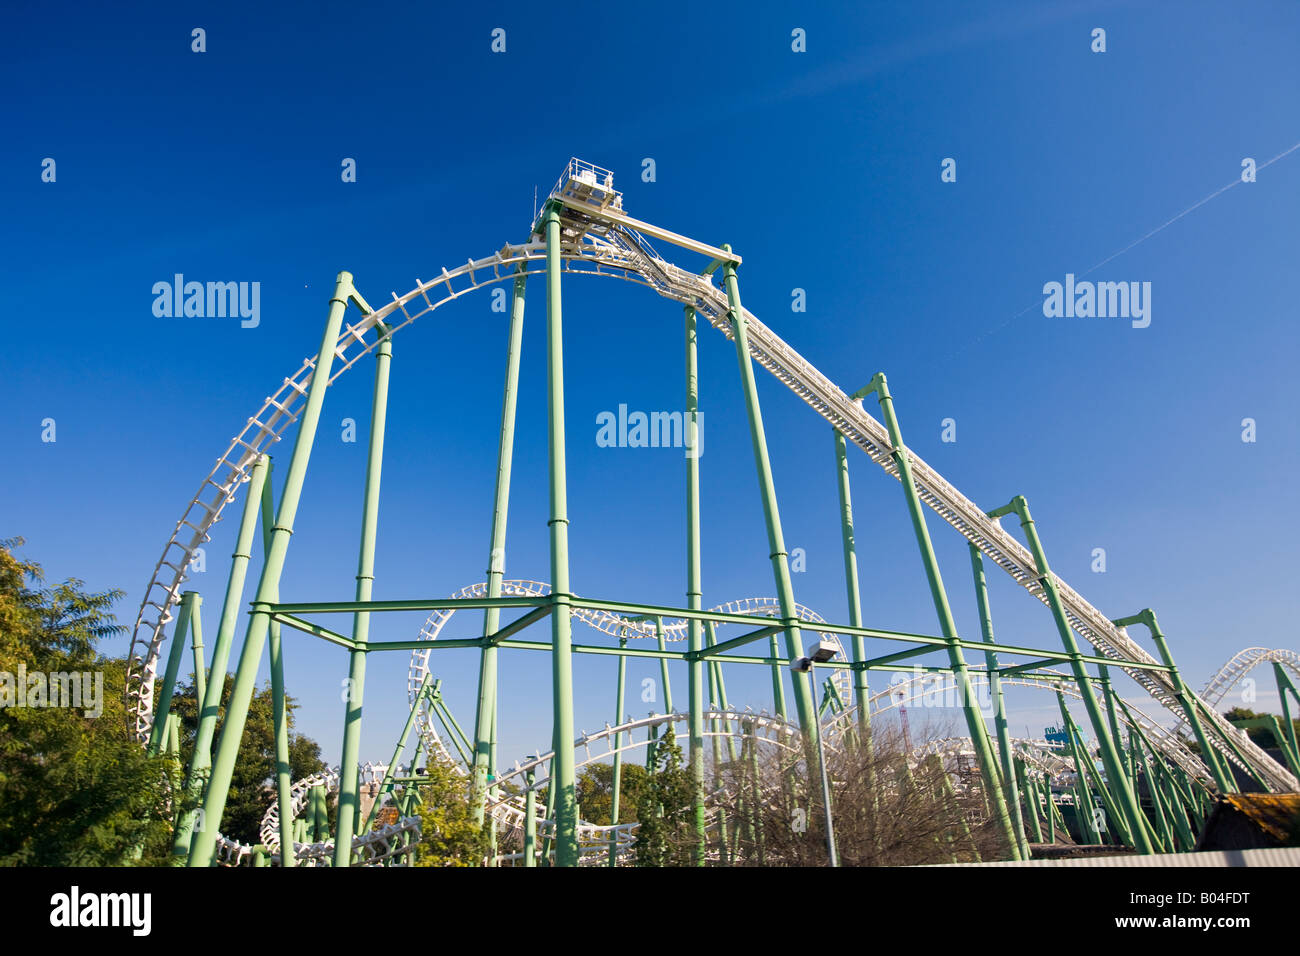 Roller Coaster presso la Isla Magica (Magic Island) theme park, Isola de la Cartuja, città di Siviglia (Siviglia), provincia di Siviglia Foto Stock